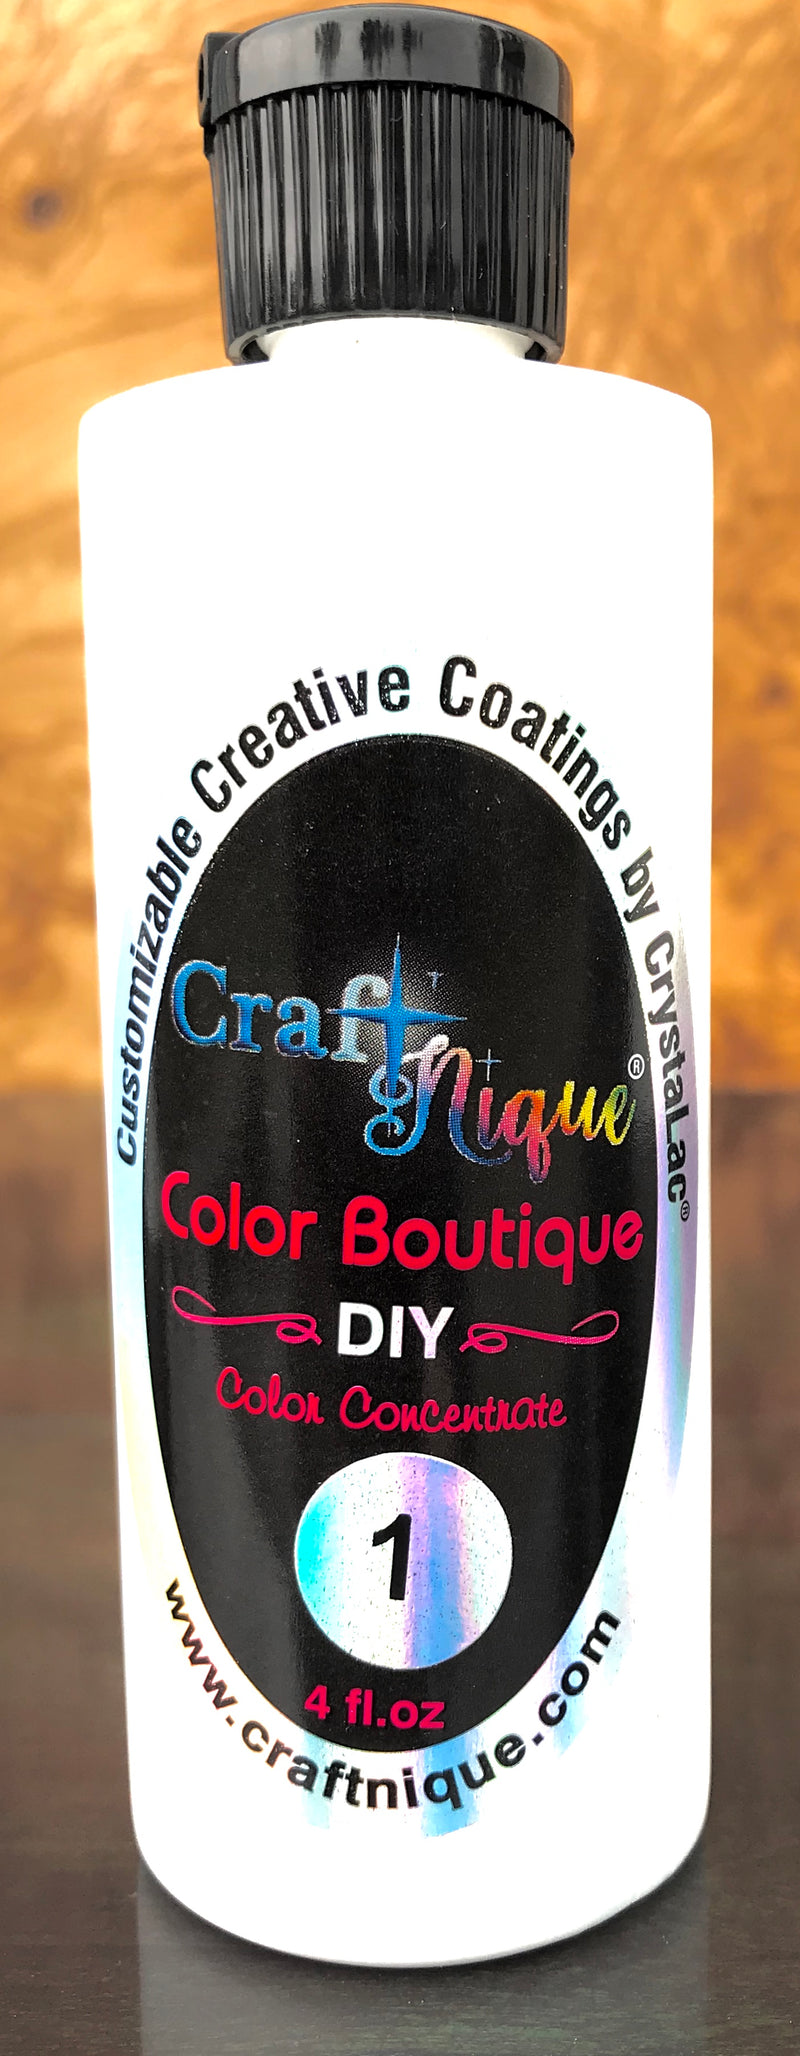 CraftNique Color Boutique DIY Concentrated Pigments